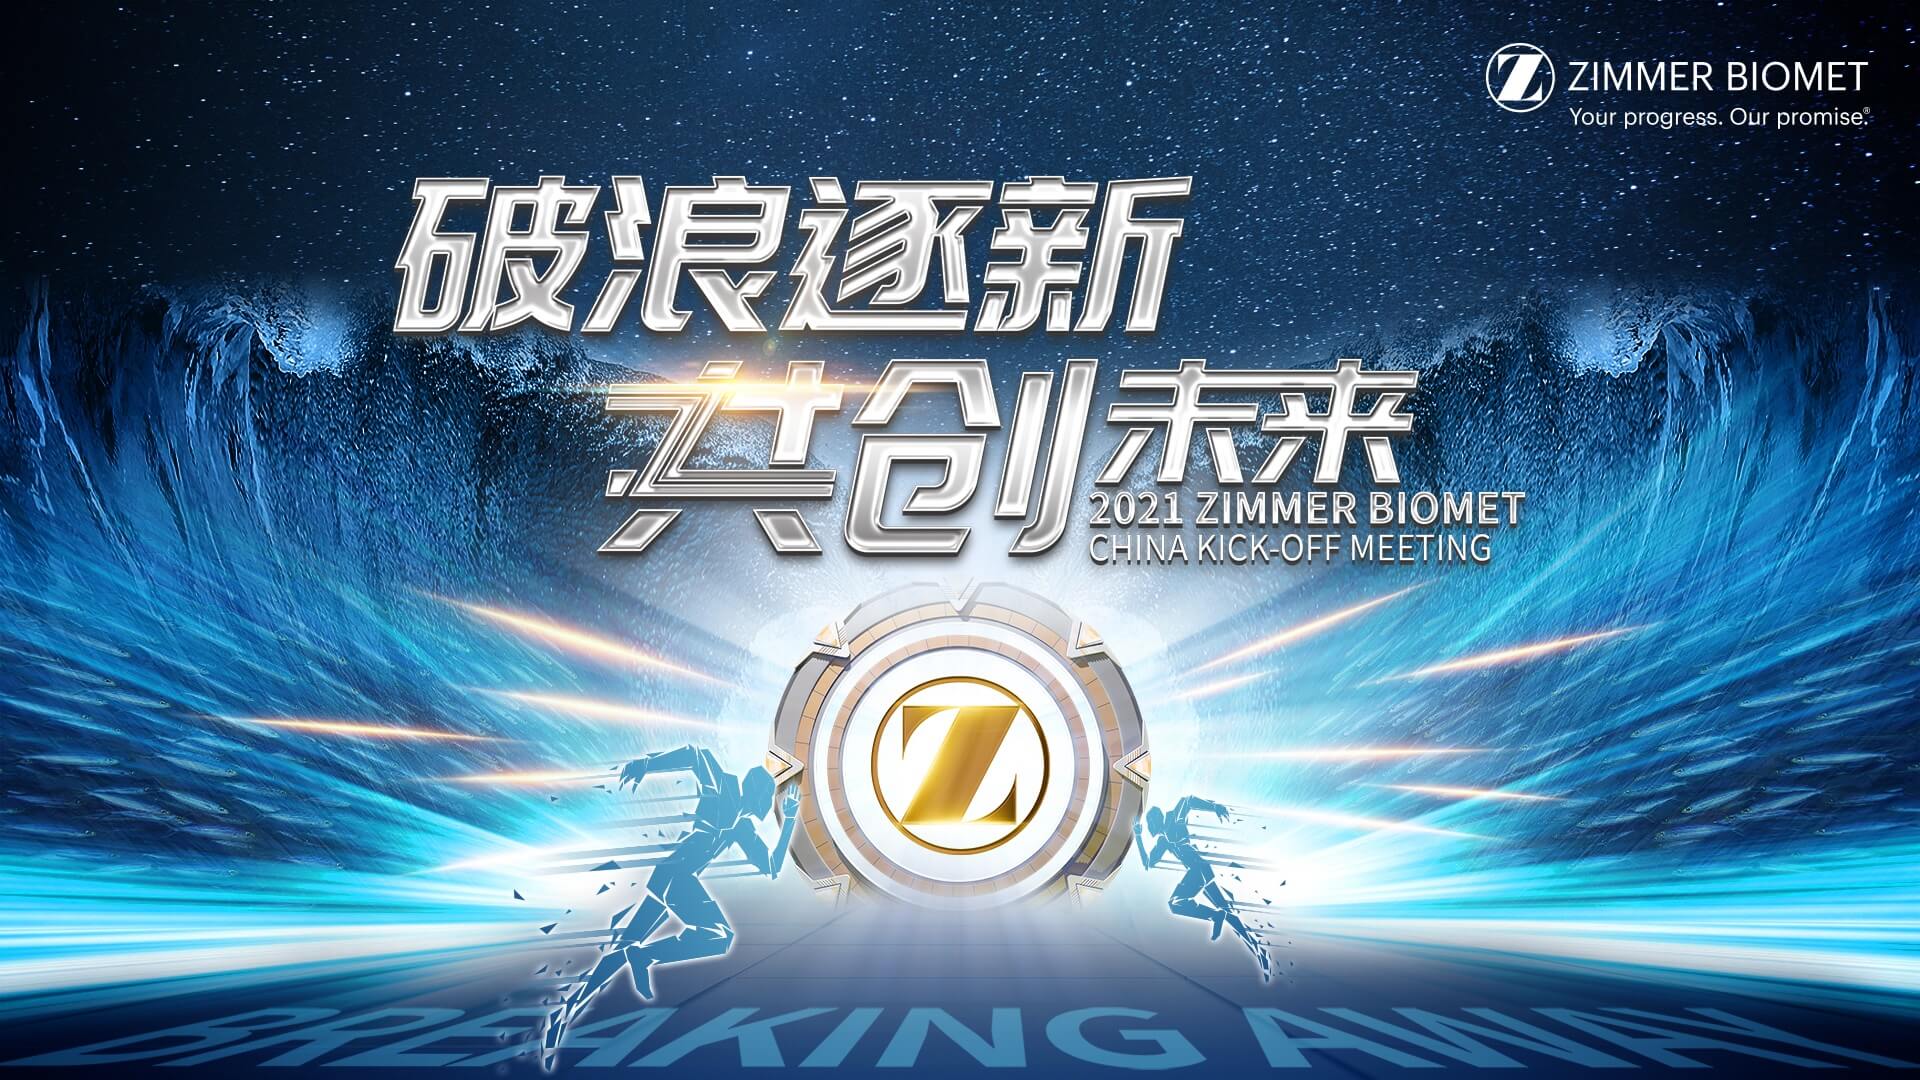 轻直播全程助力ZIMMER BIOMET 2021中国启动会圆满落幕